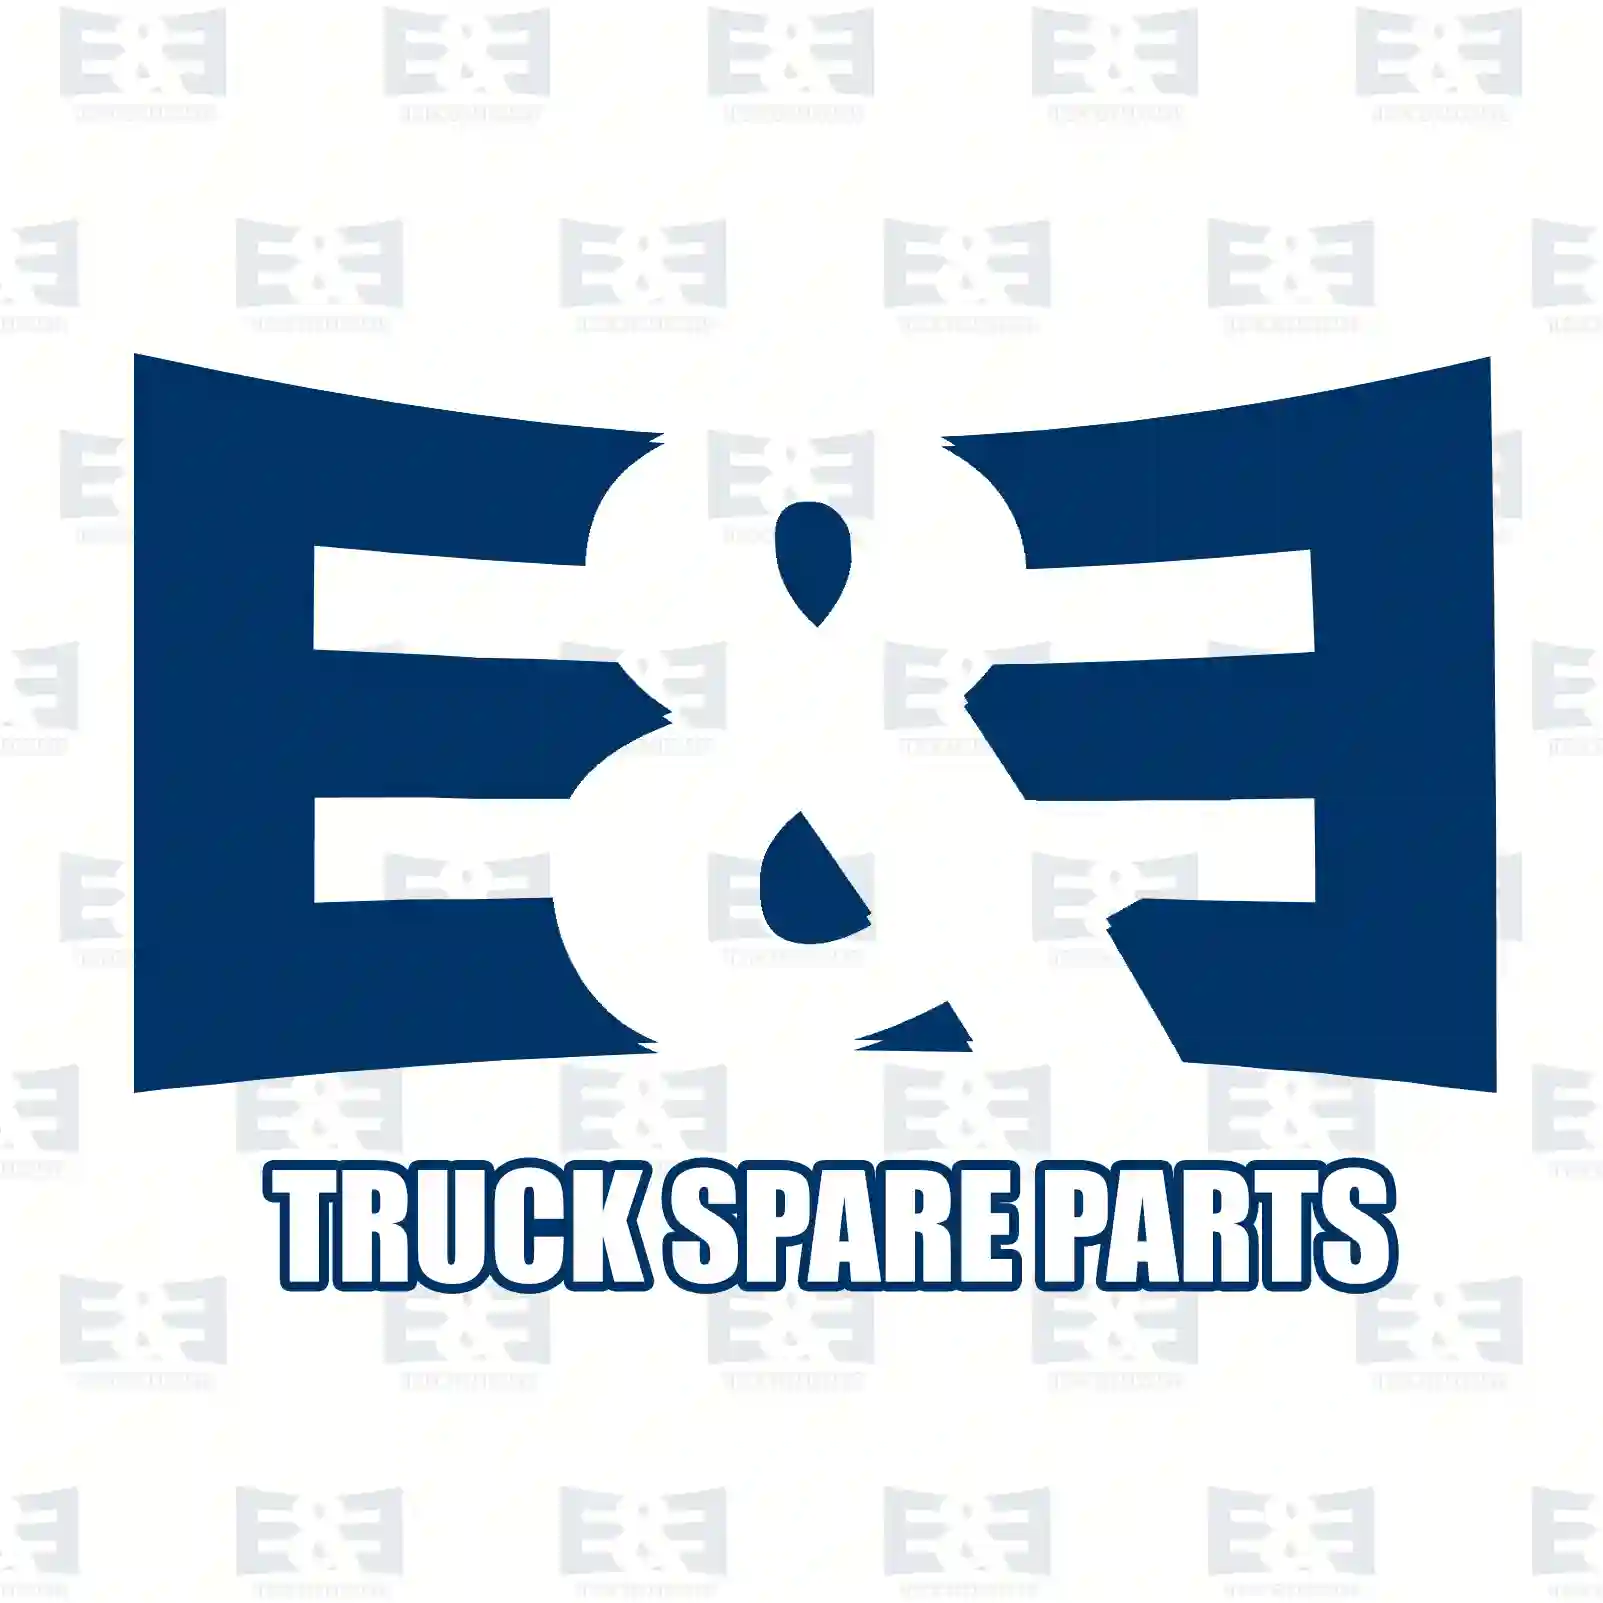 Gasket, 2E2206549, 51966010542, 51966010577, , , , , ||  2E2206549 E&E Truck Spare Parts | Truck Spare Parts, Auotomotive Spare Parts Gasket, 2E2206549, 51966010542, 51966010577, , , , , ||  2E2206549 E&E Truck Spare Parts | Truck Spare Parts, Auotomotive Spare Parts